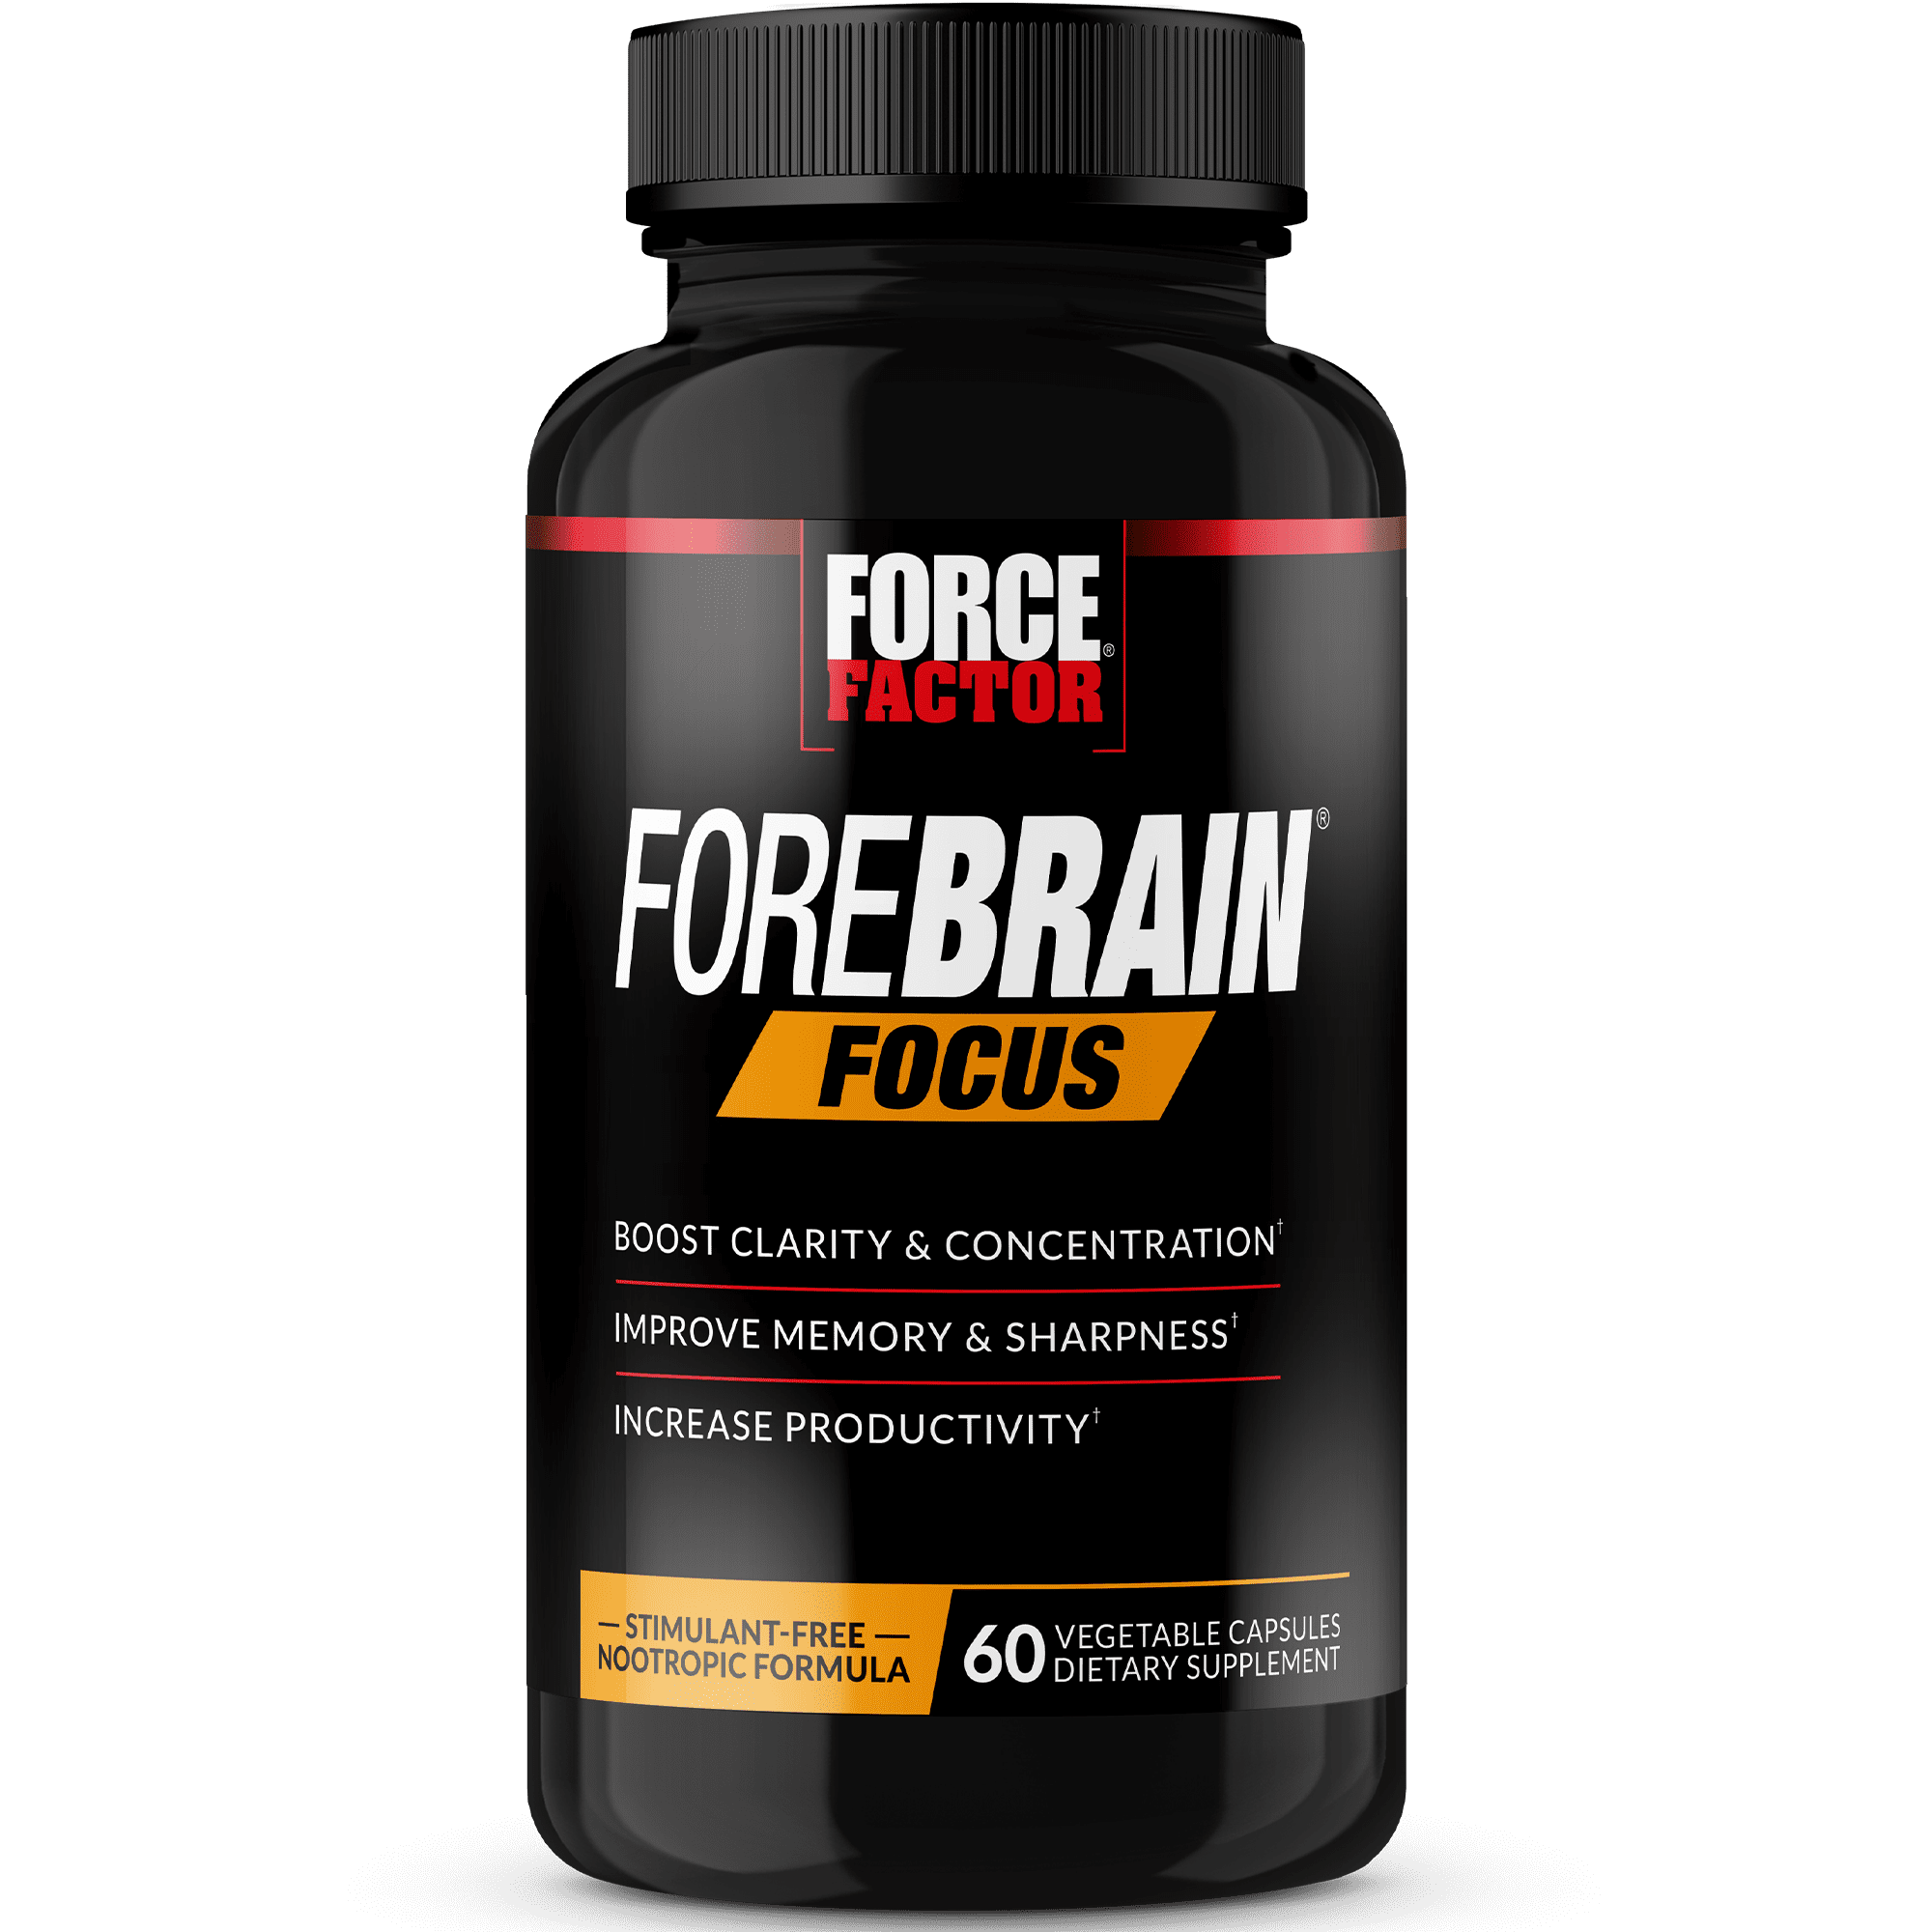 Force Factor Forebrain Focus Nootropic Brain Health Supplement for Focus, 60 Capsules